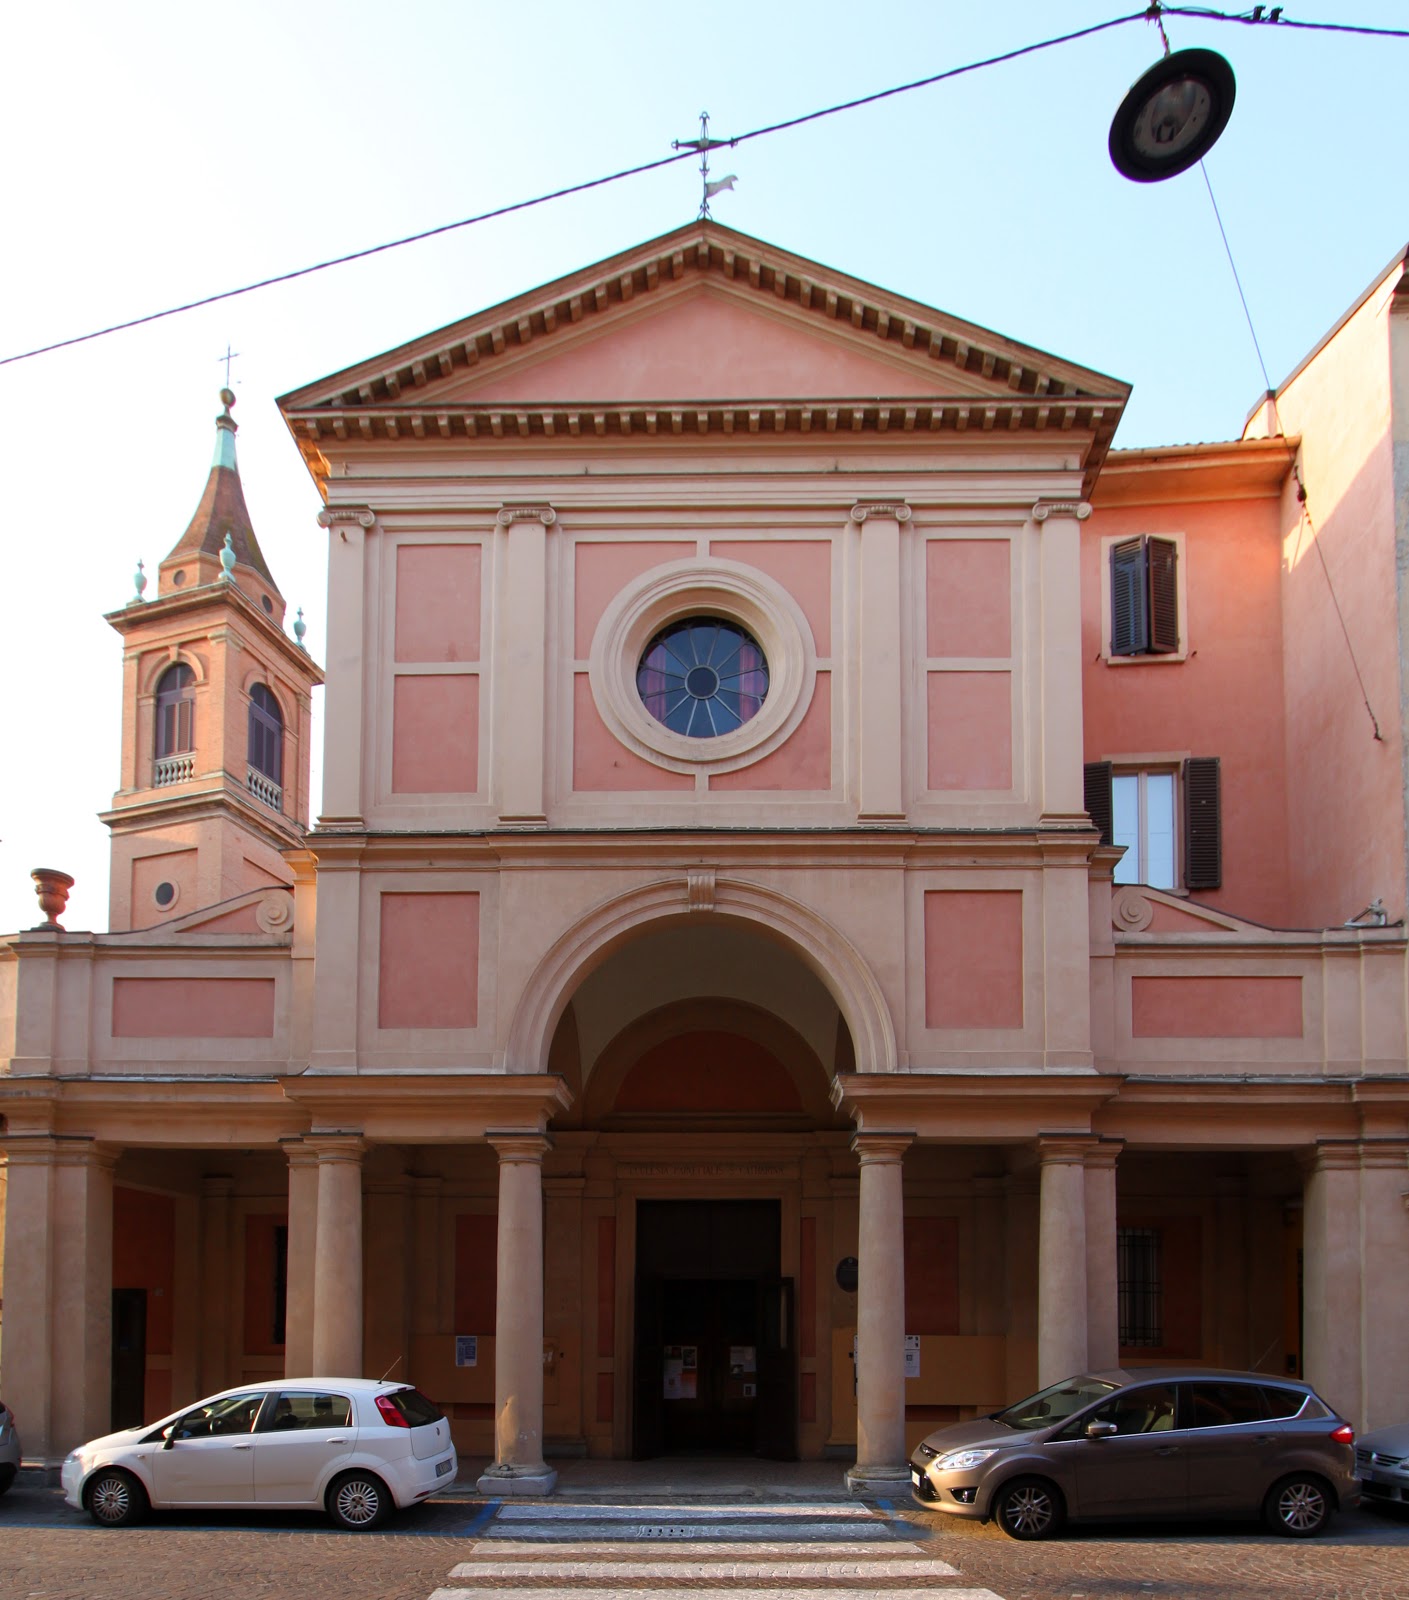 Via Saragozza 61 (N.224) – Chiesa parrocchiale di Santa Caterina di Saragozza